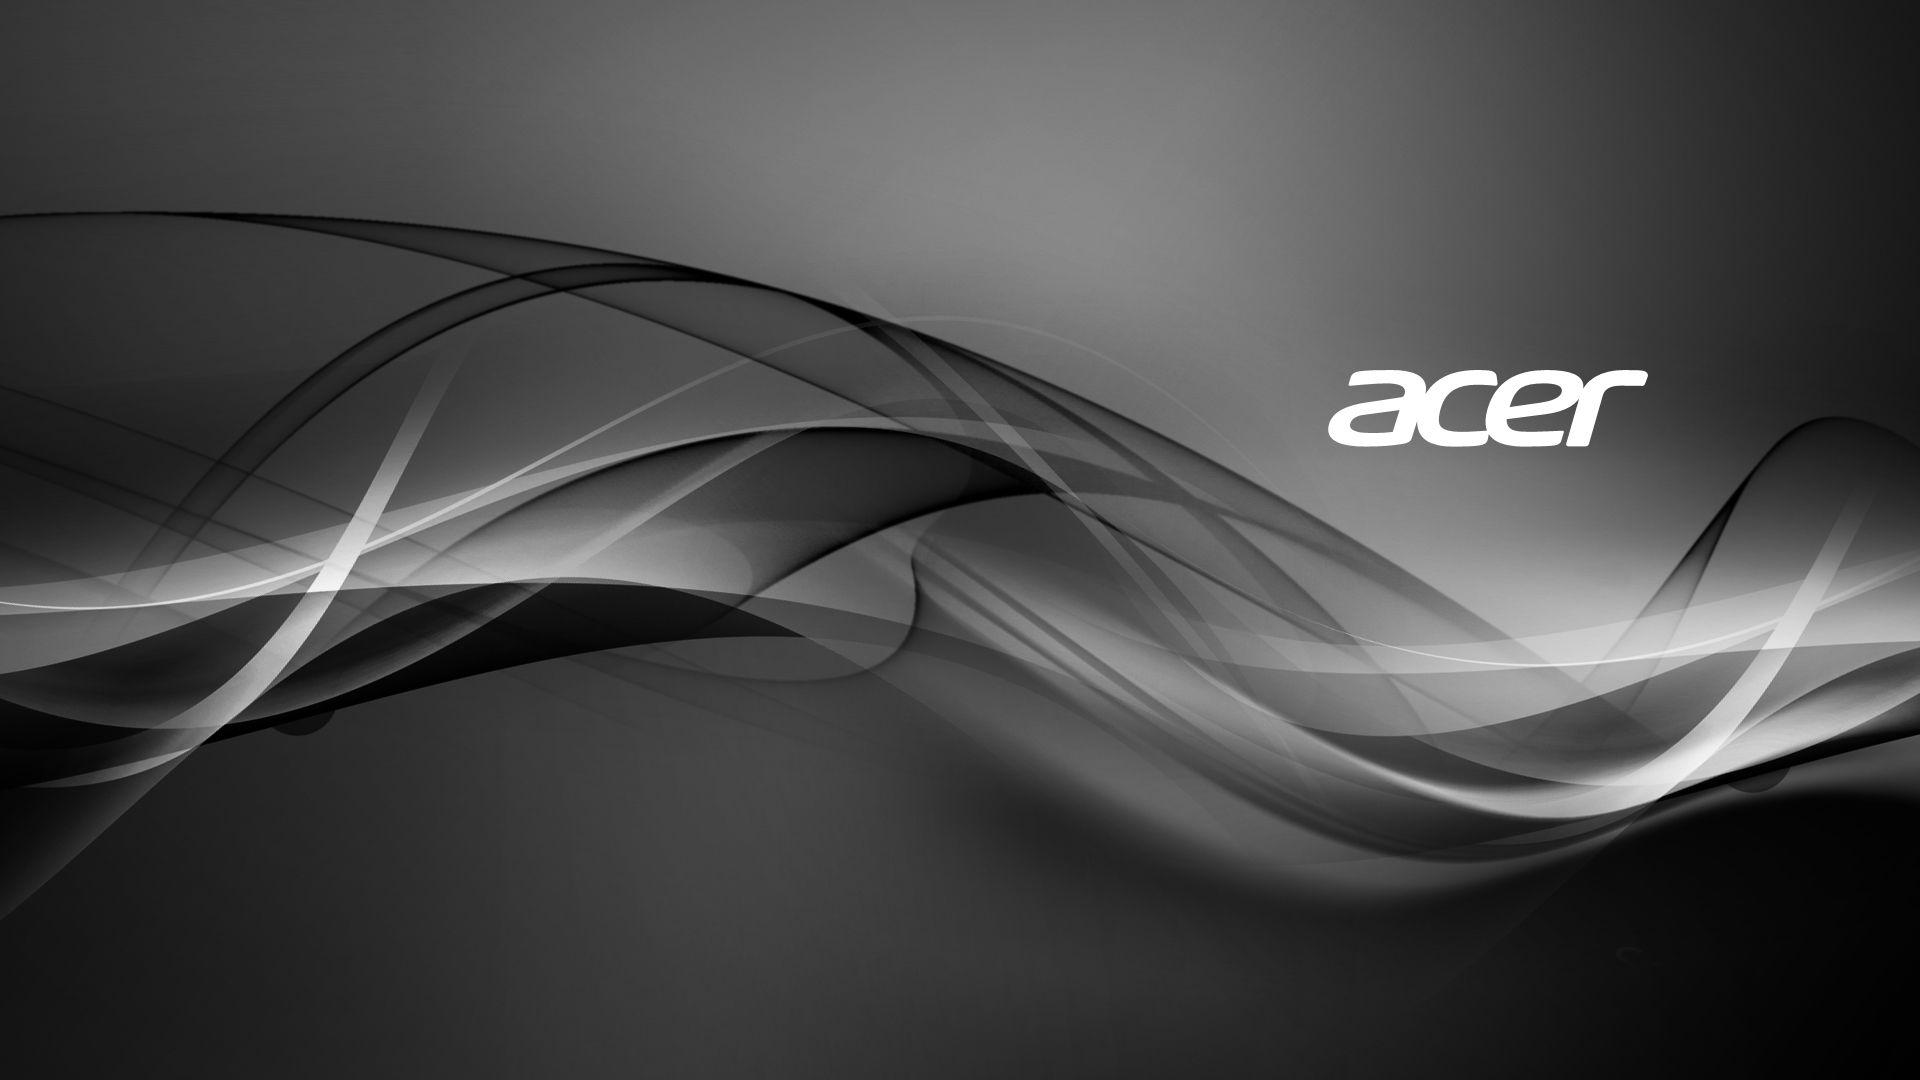 Được tạo ra bởi thương hiệu Acer, bộ sưu tập hình nền PC Acer HD mang đến cho người dùng một tùy chọn tuyệt vời để tùy chỉnh giao diện máy tính của họ. Tất cả các hình nền trong bộ sưu tập đều có chất lượng cao và độ phân giải sắc nét để giúp tăng cường sự hiệu quả của máy tính của bạn.